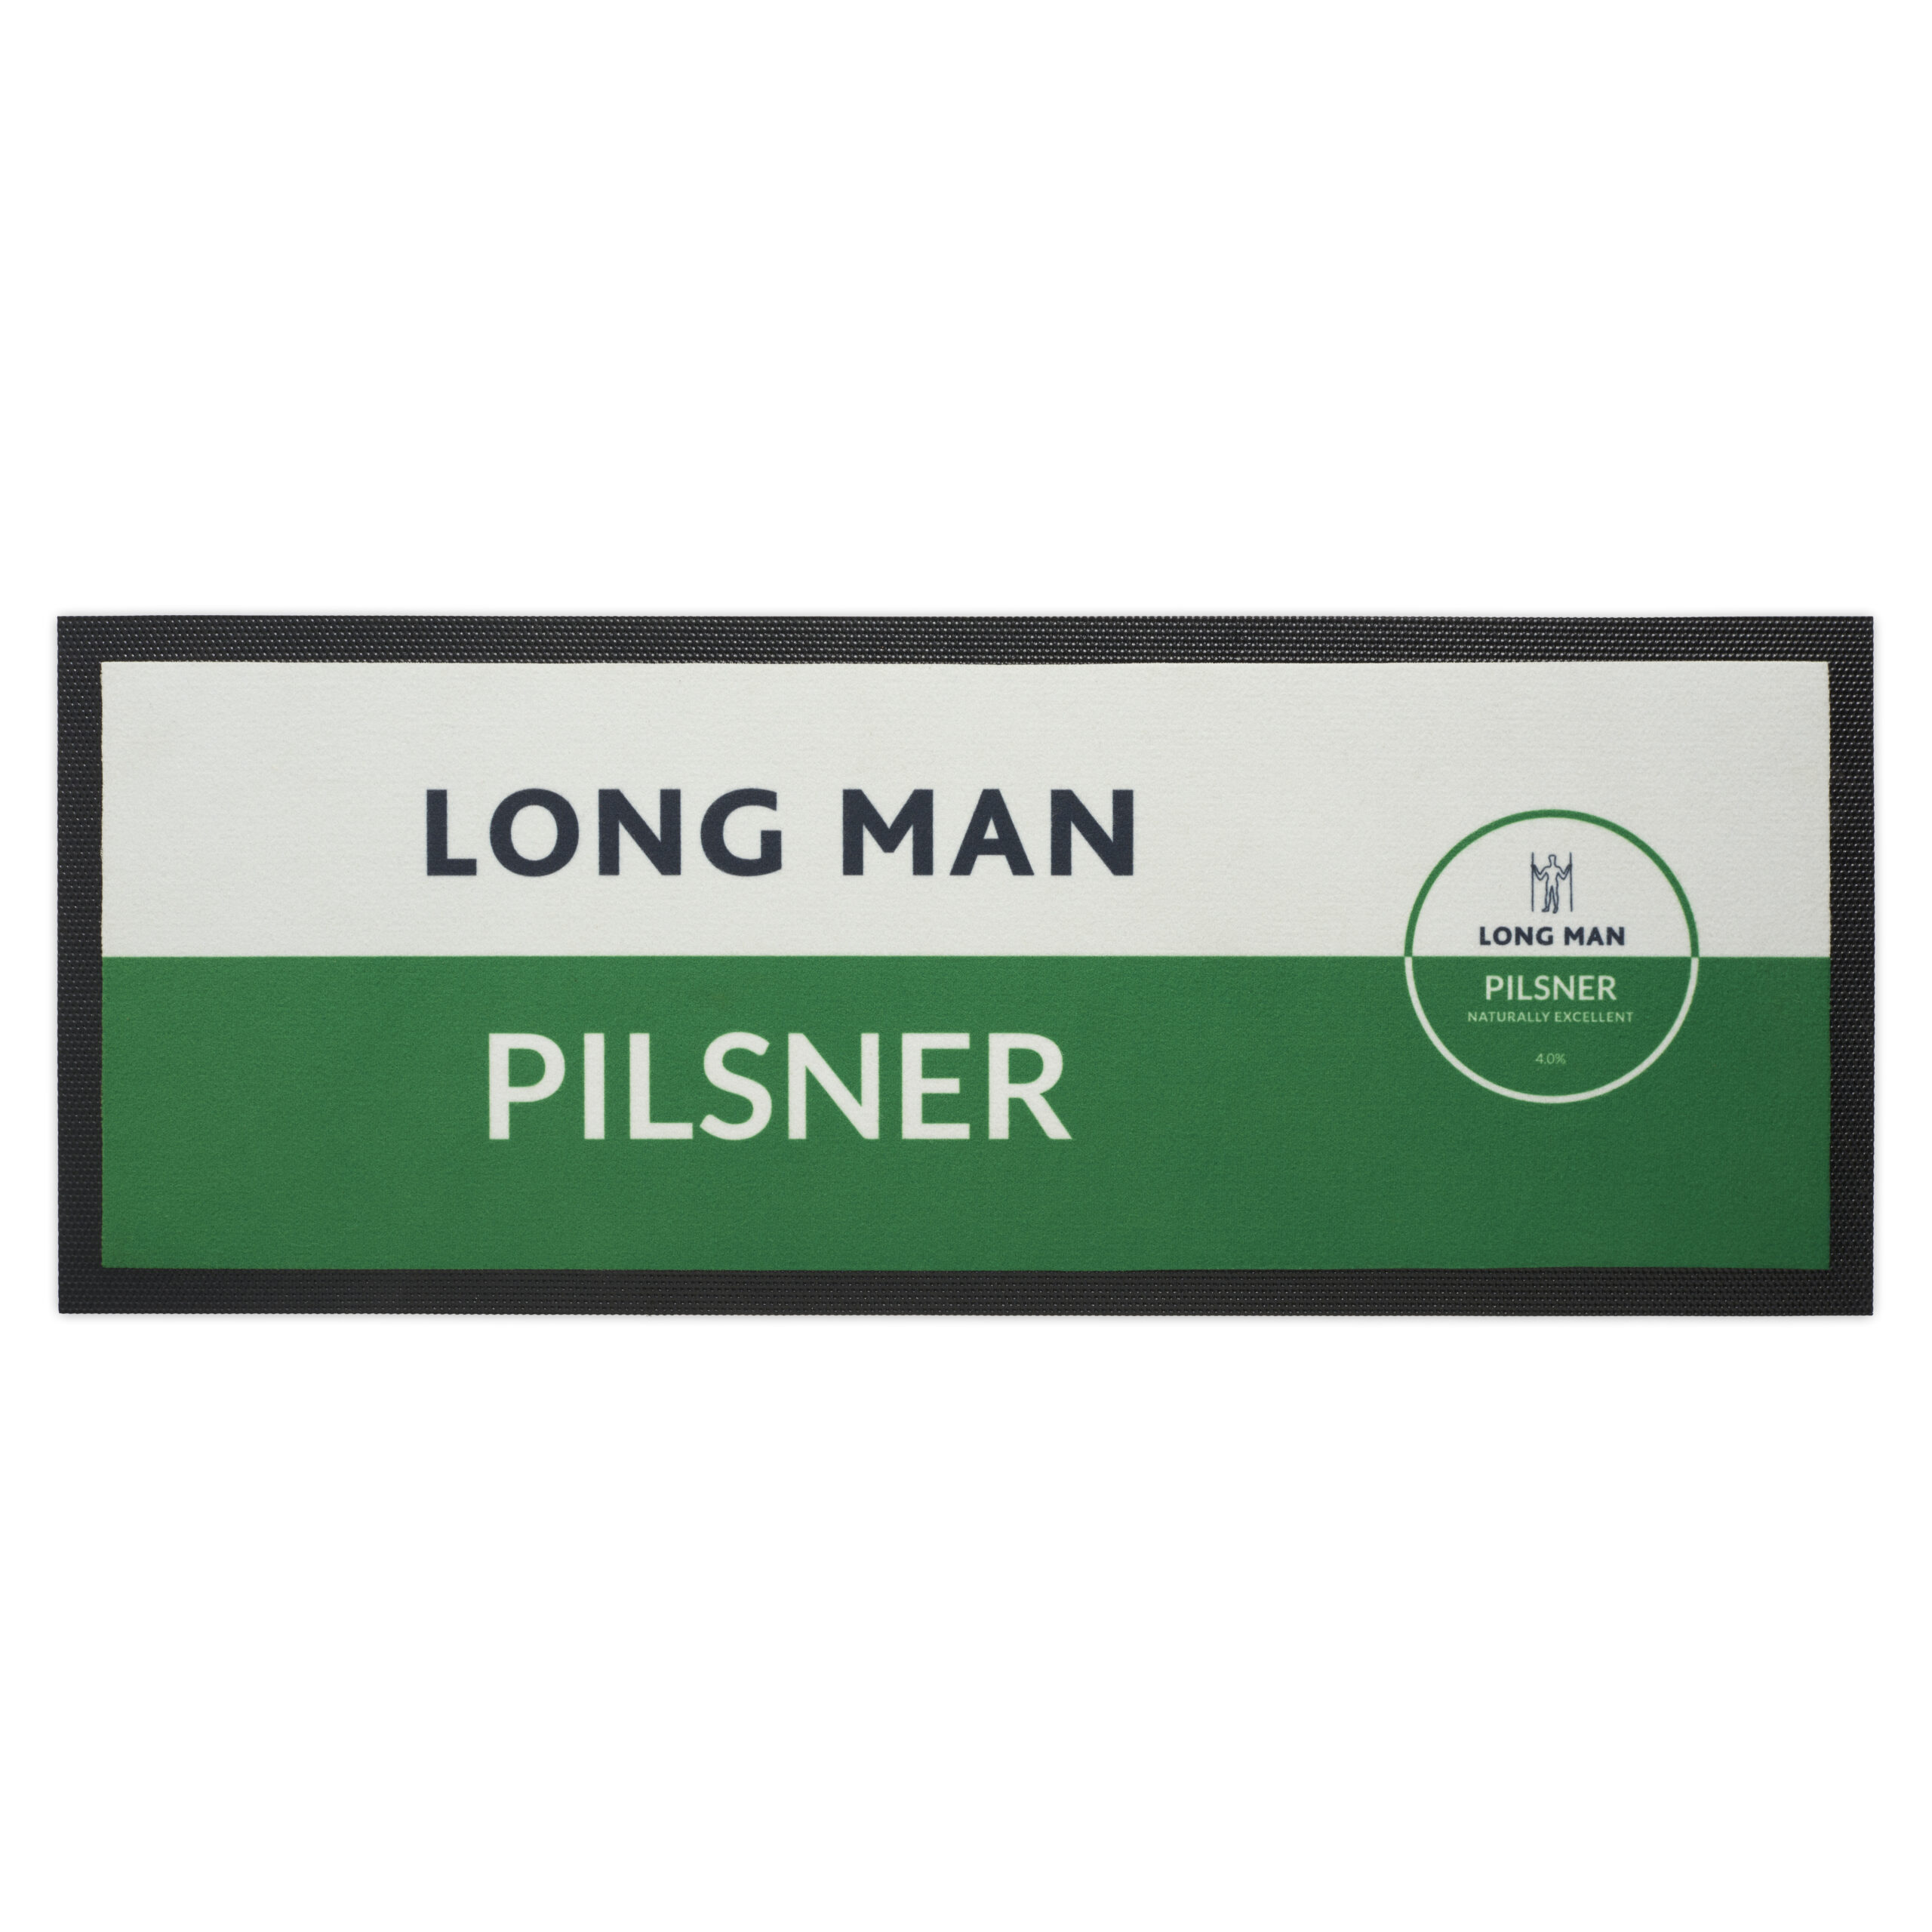 Pilsner bar runner